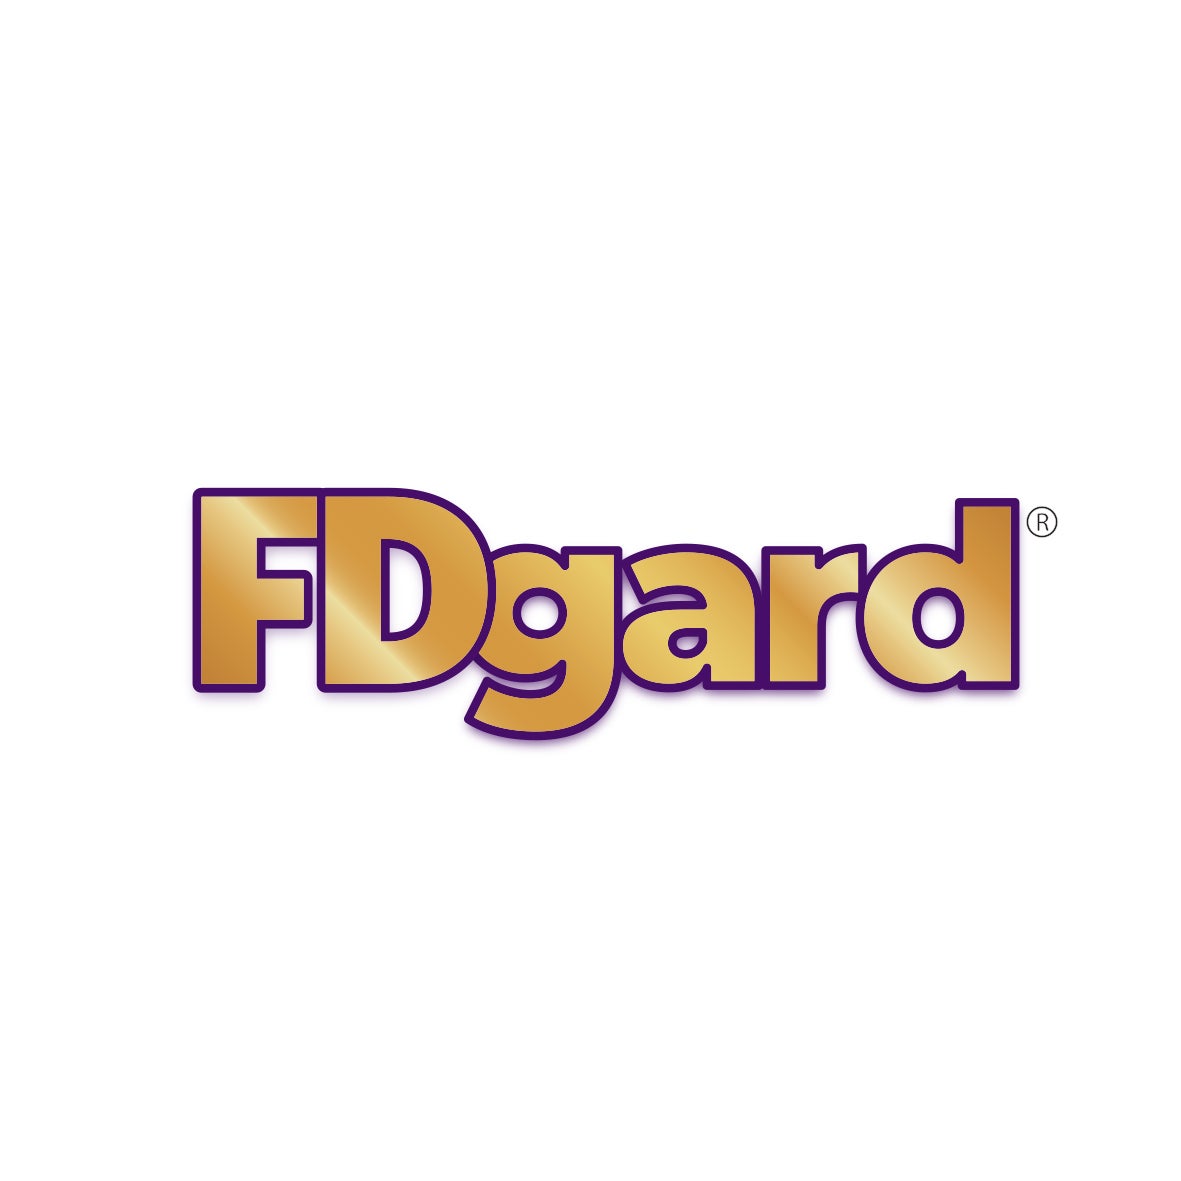 NHSc_Logos_FBGard